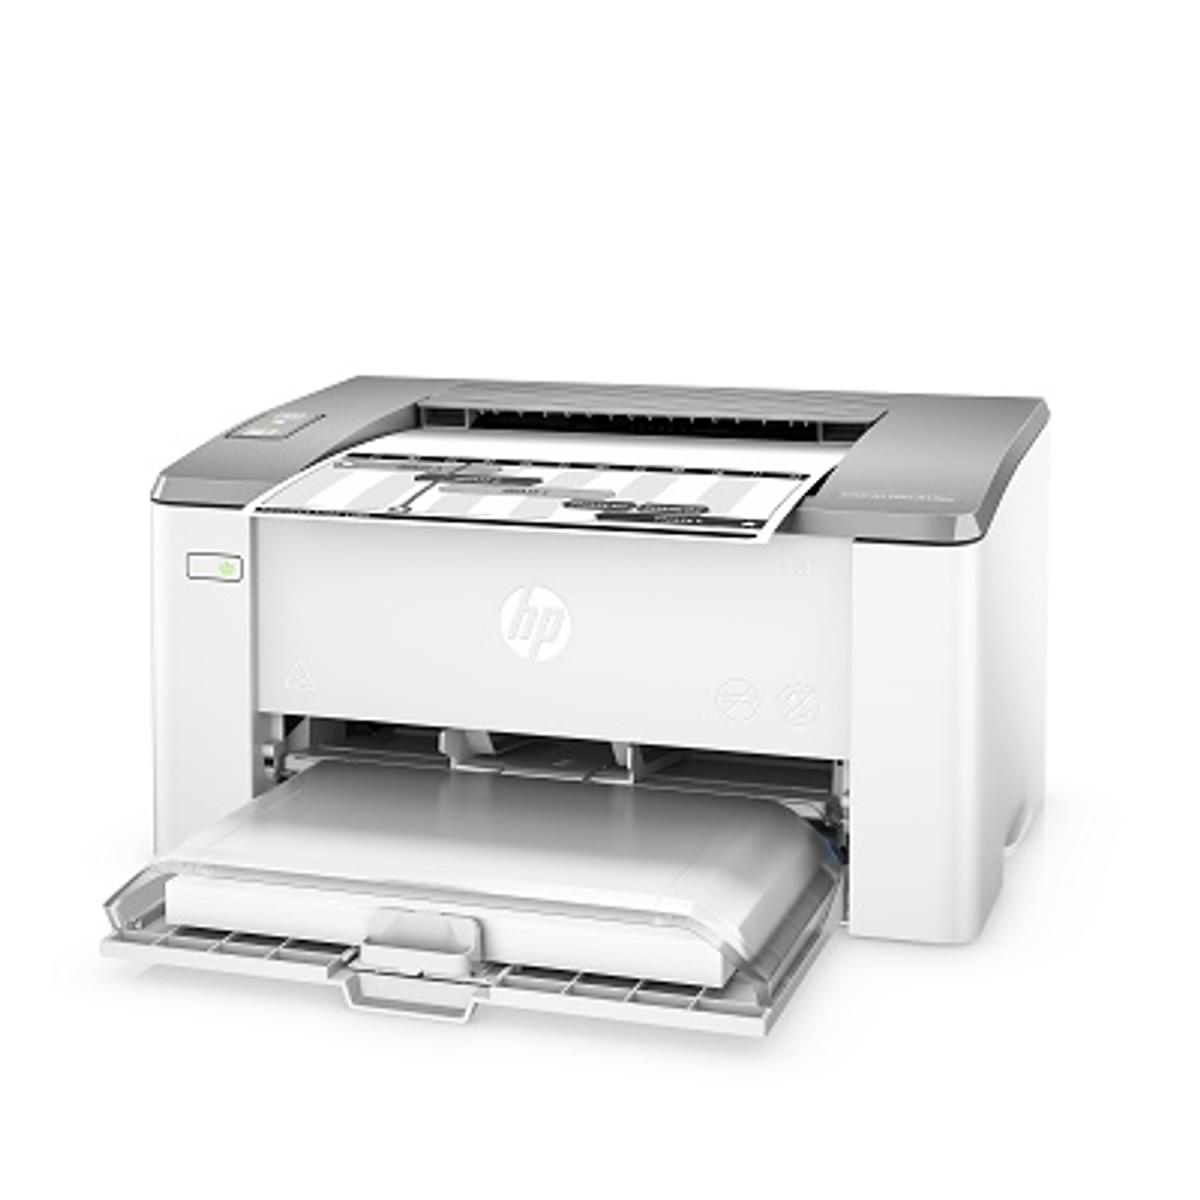 HP komt met nieuwe serie mobiele LaserJet printers image